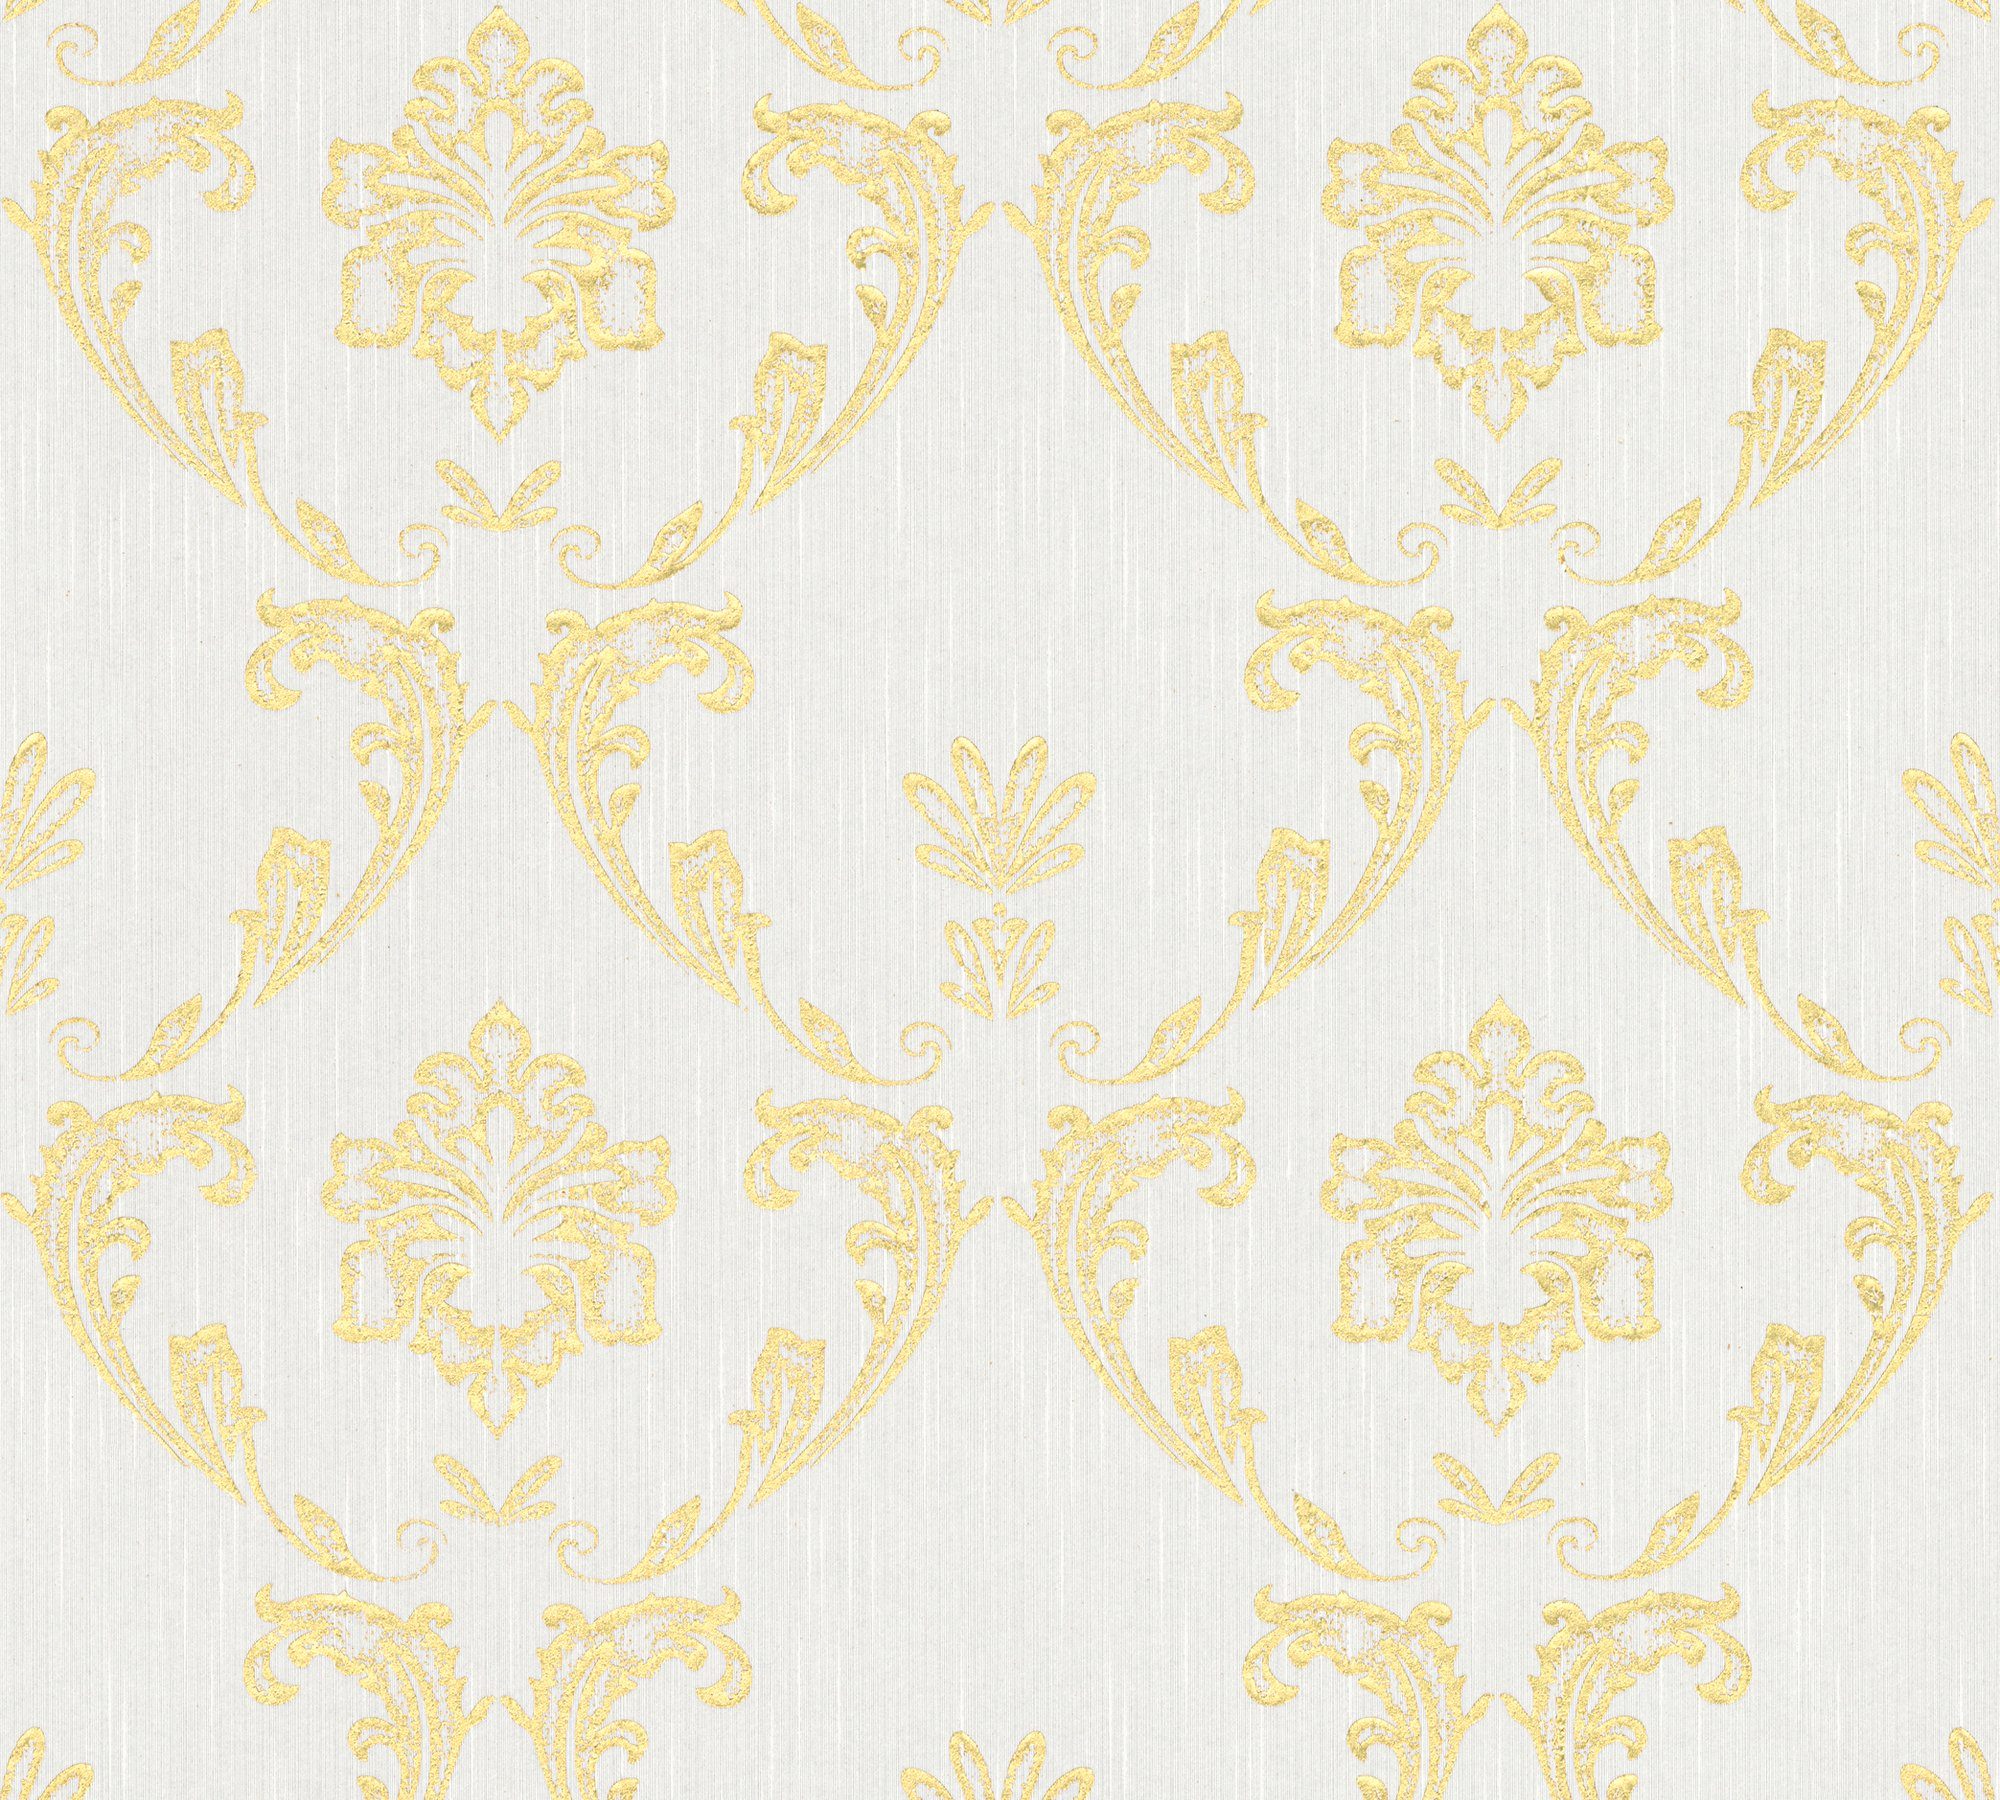 samtig, Silk, Tapete Paper Ornament A.S. gold/weiß Barock Création Metallic glänzend, Textiltapete Architects Barock, matt,